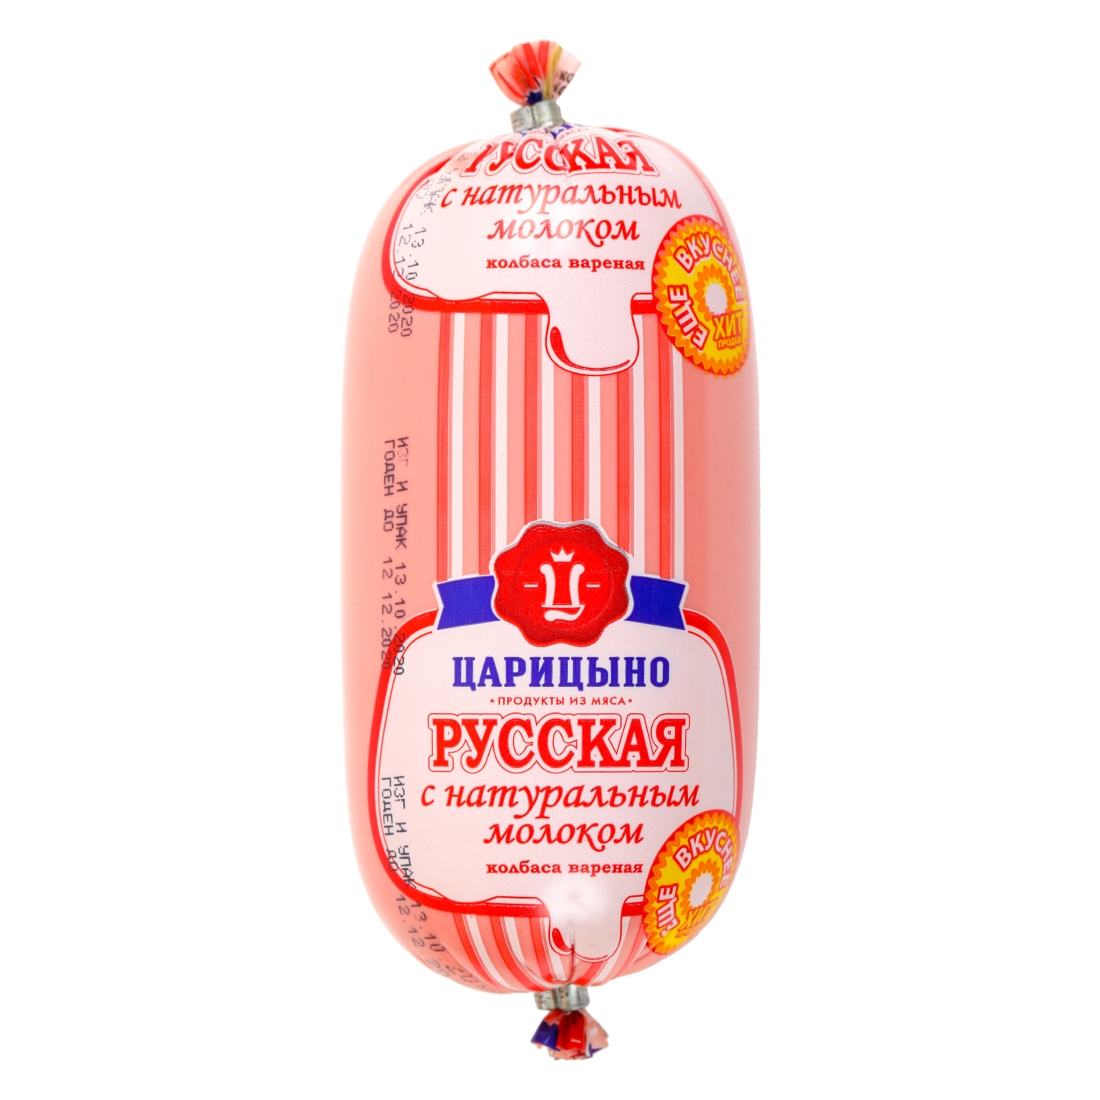 Колбаса Царицыно Русская с натуральным молоком вареная 500 г